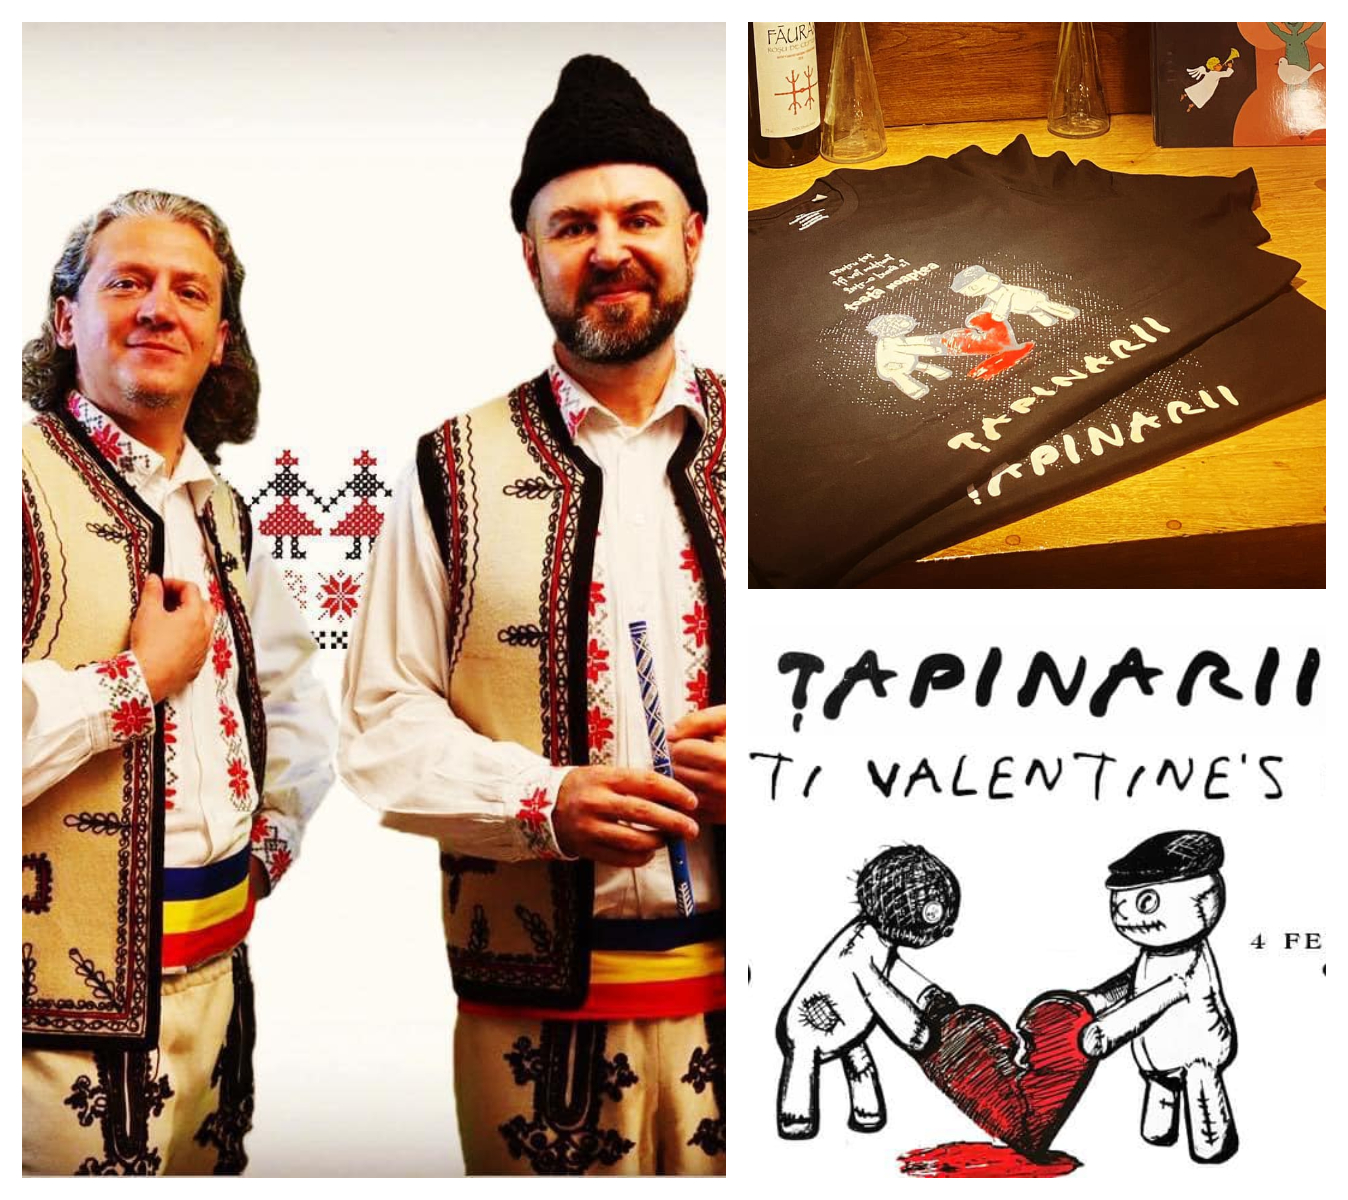 Țapinarii dau o lovitură modei și îndrăgostiților! Lansează propria linie de tricouri anti-Valentine’s Day